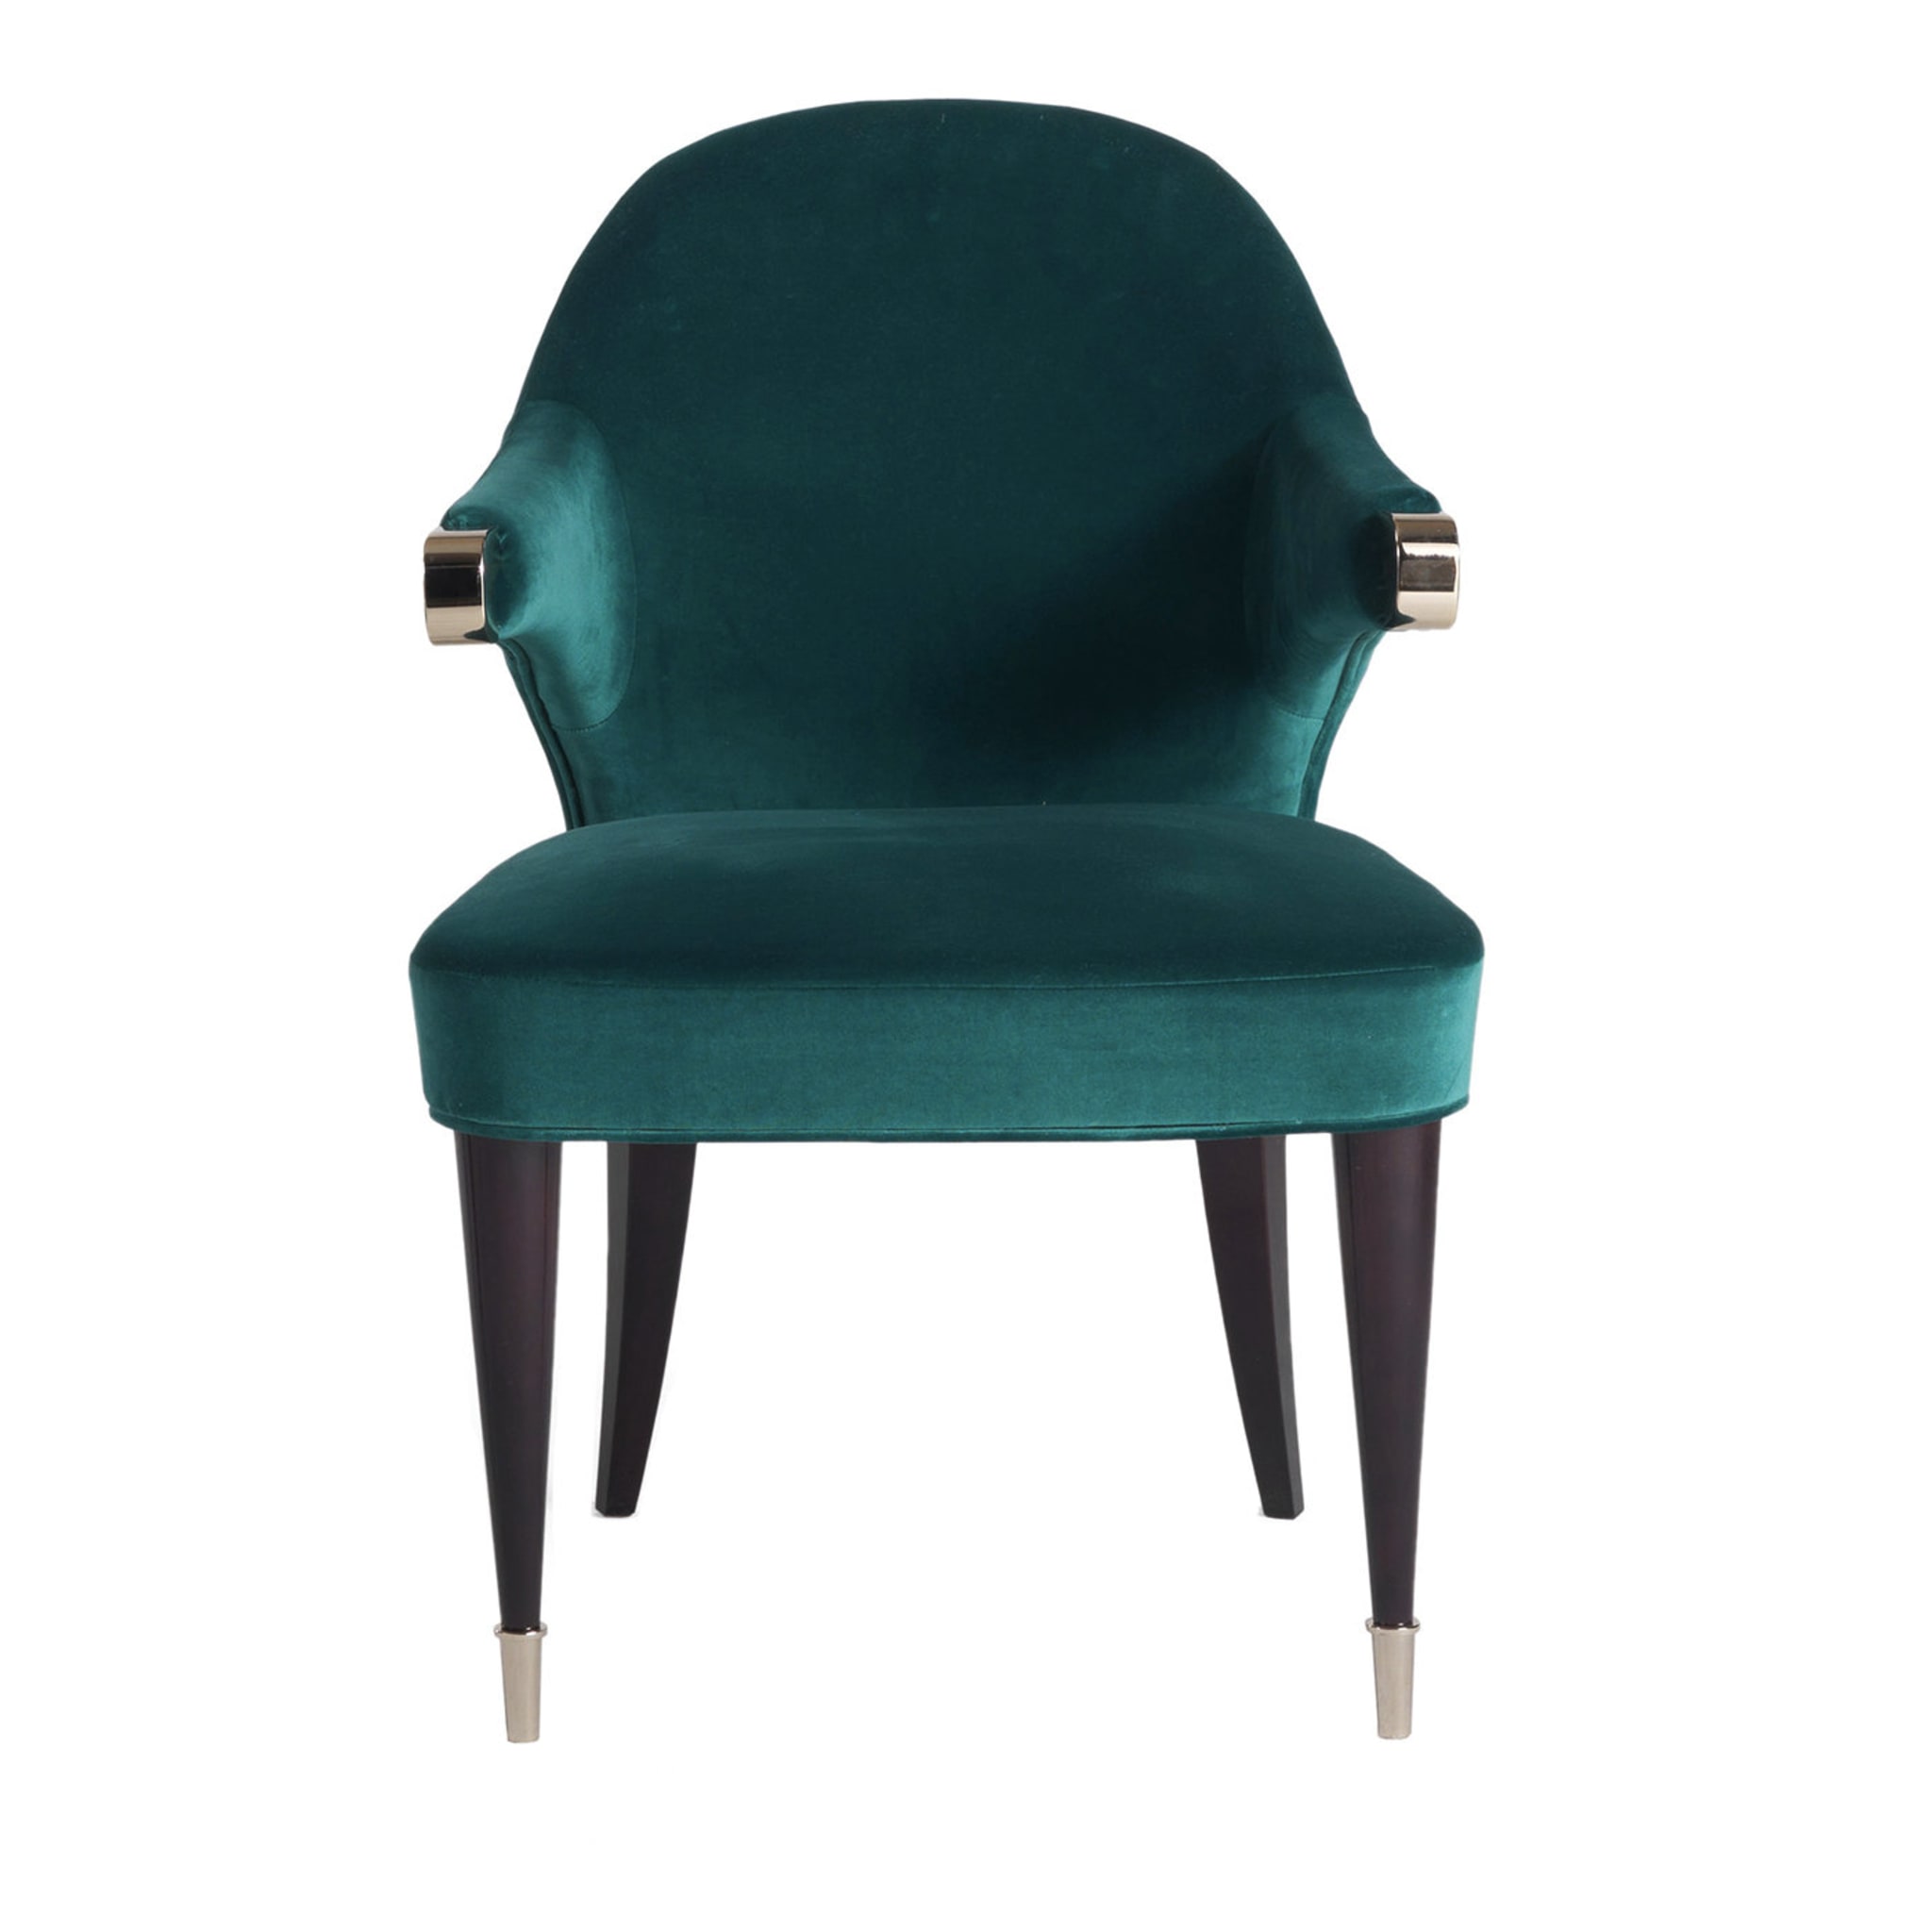 P/5090 Chaise vert foncé - Vue principale